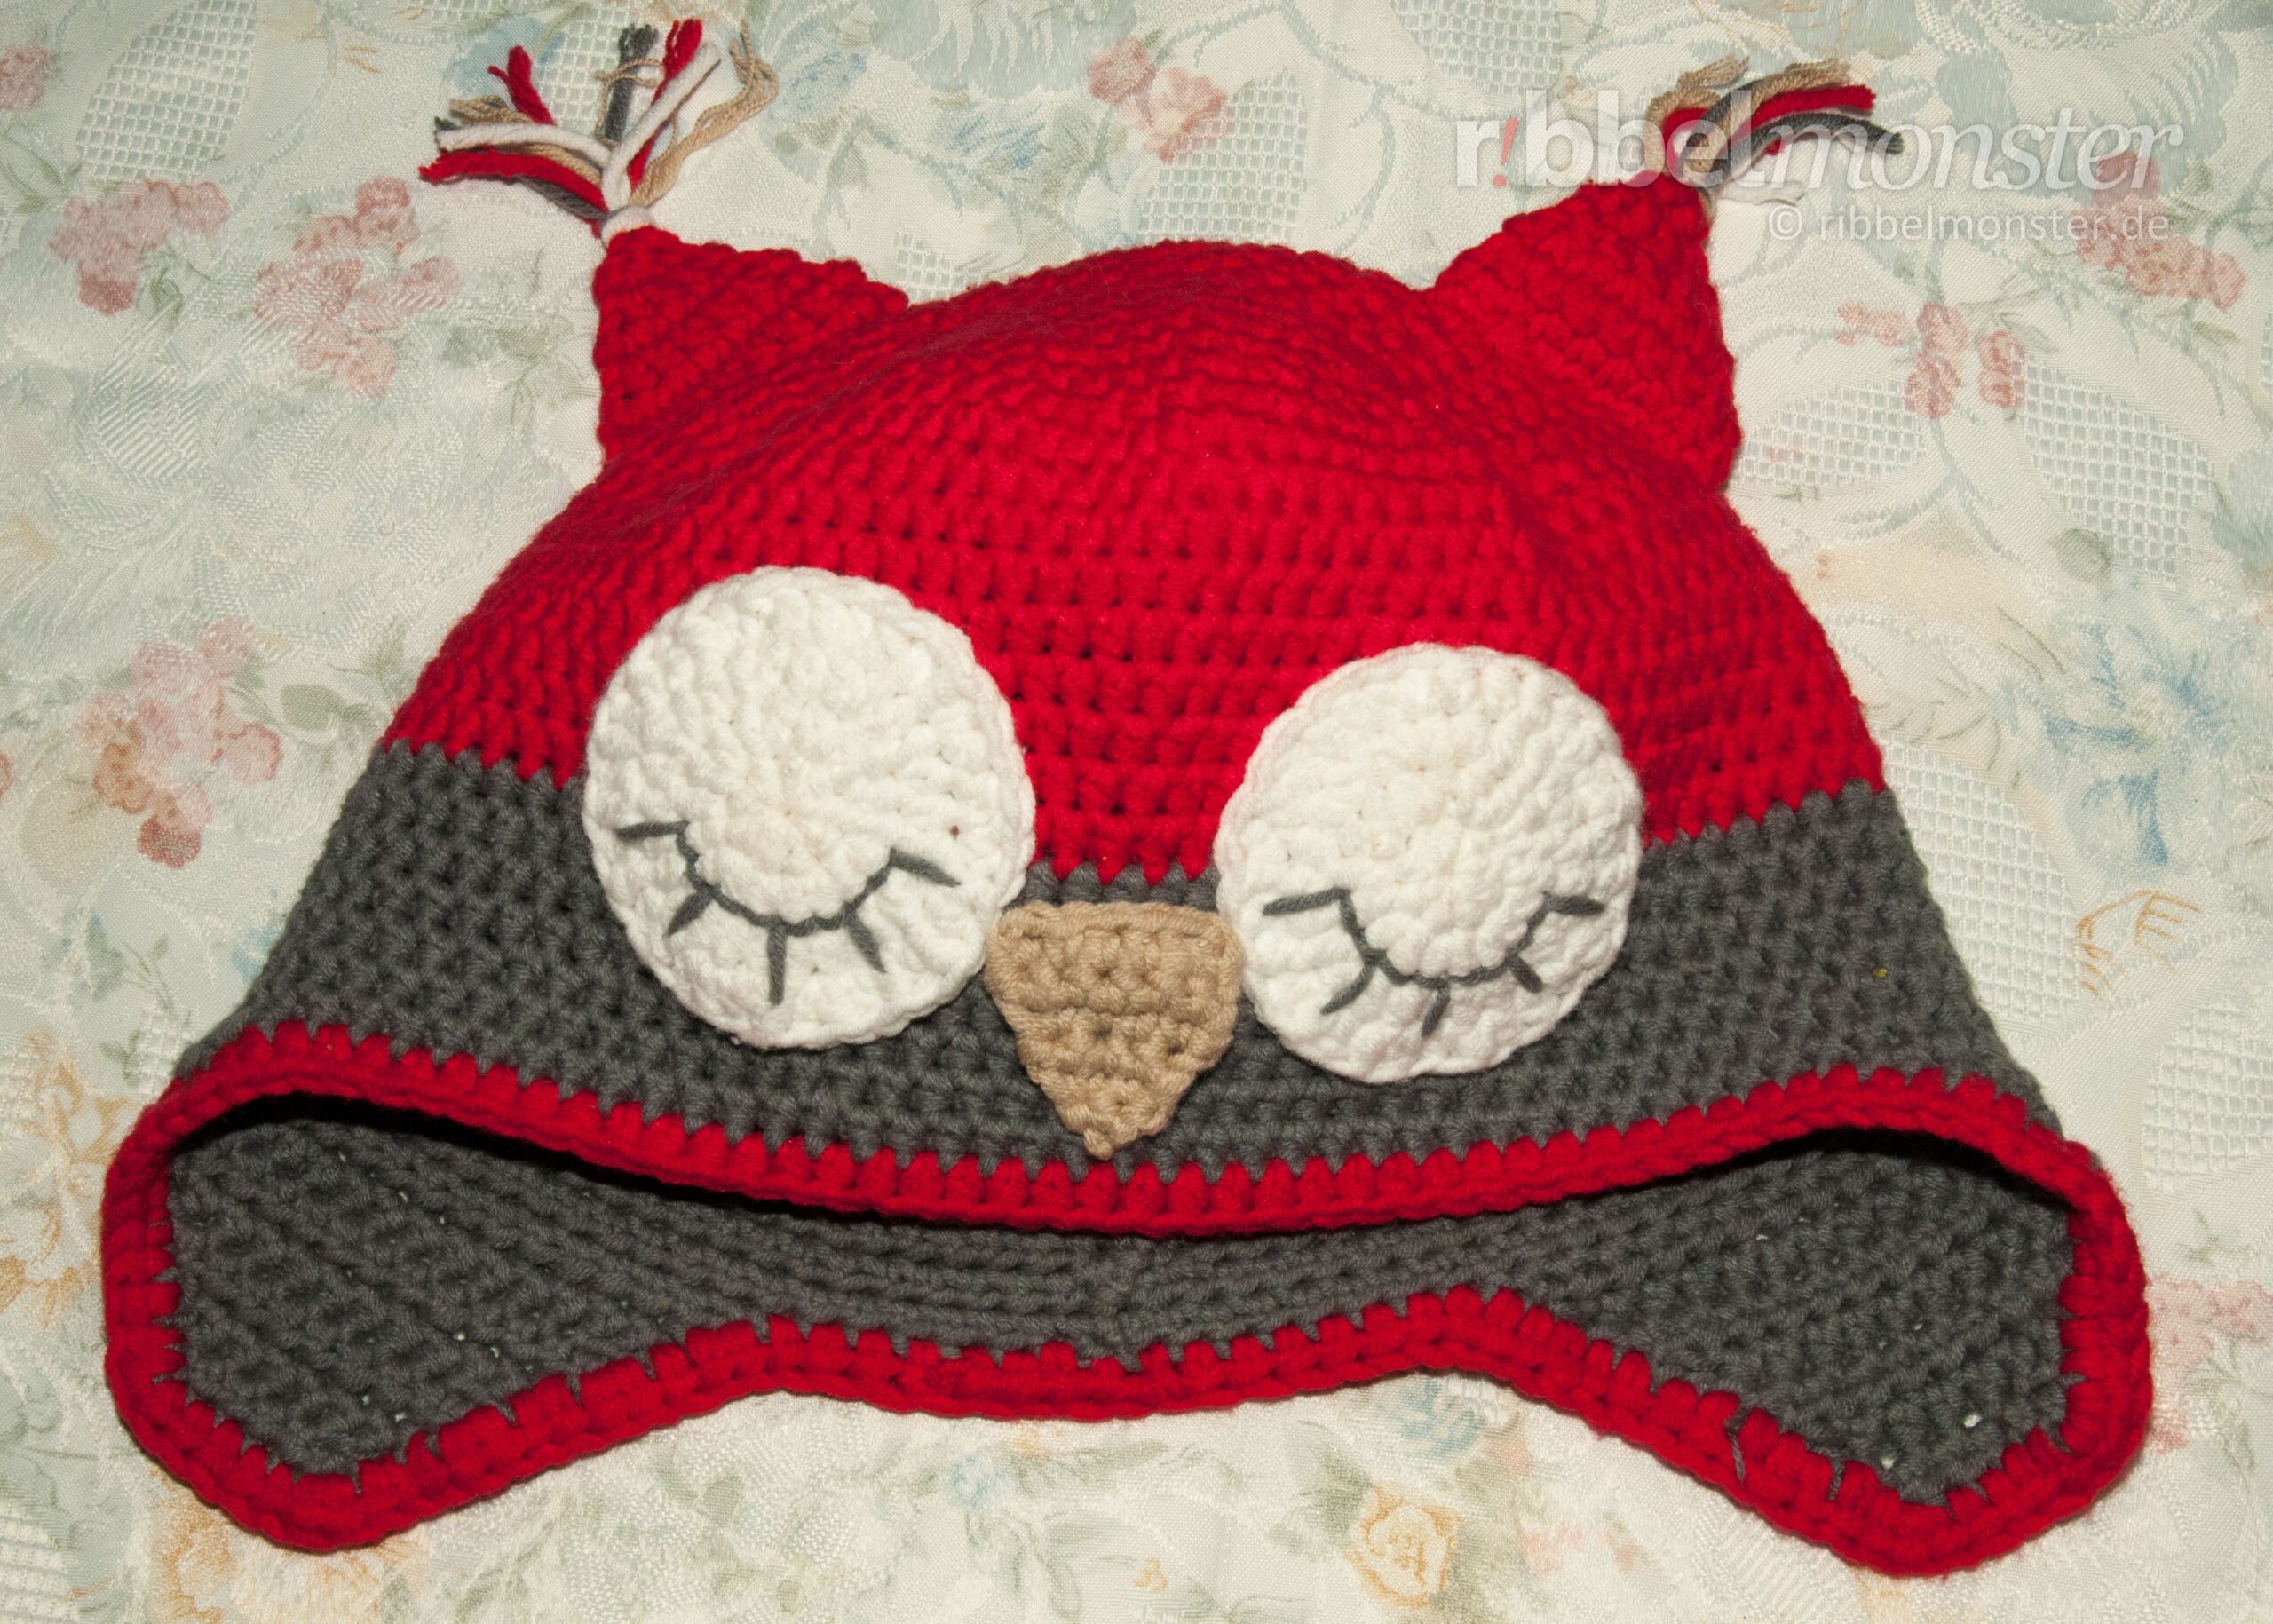 Crochet Hat – Crochet Owl Hat “Sleeping Owl”